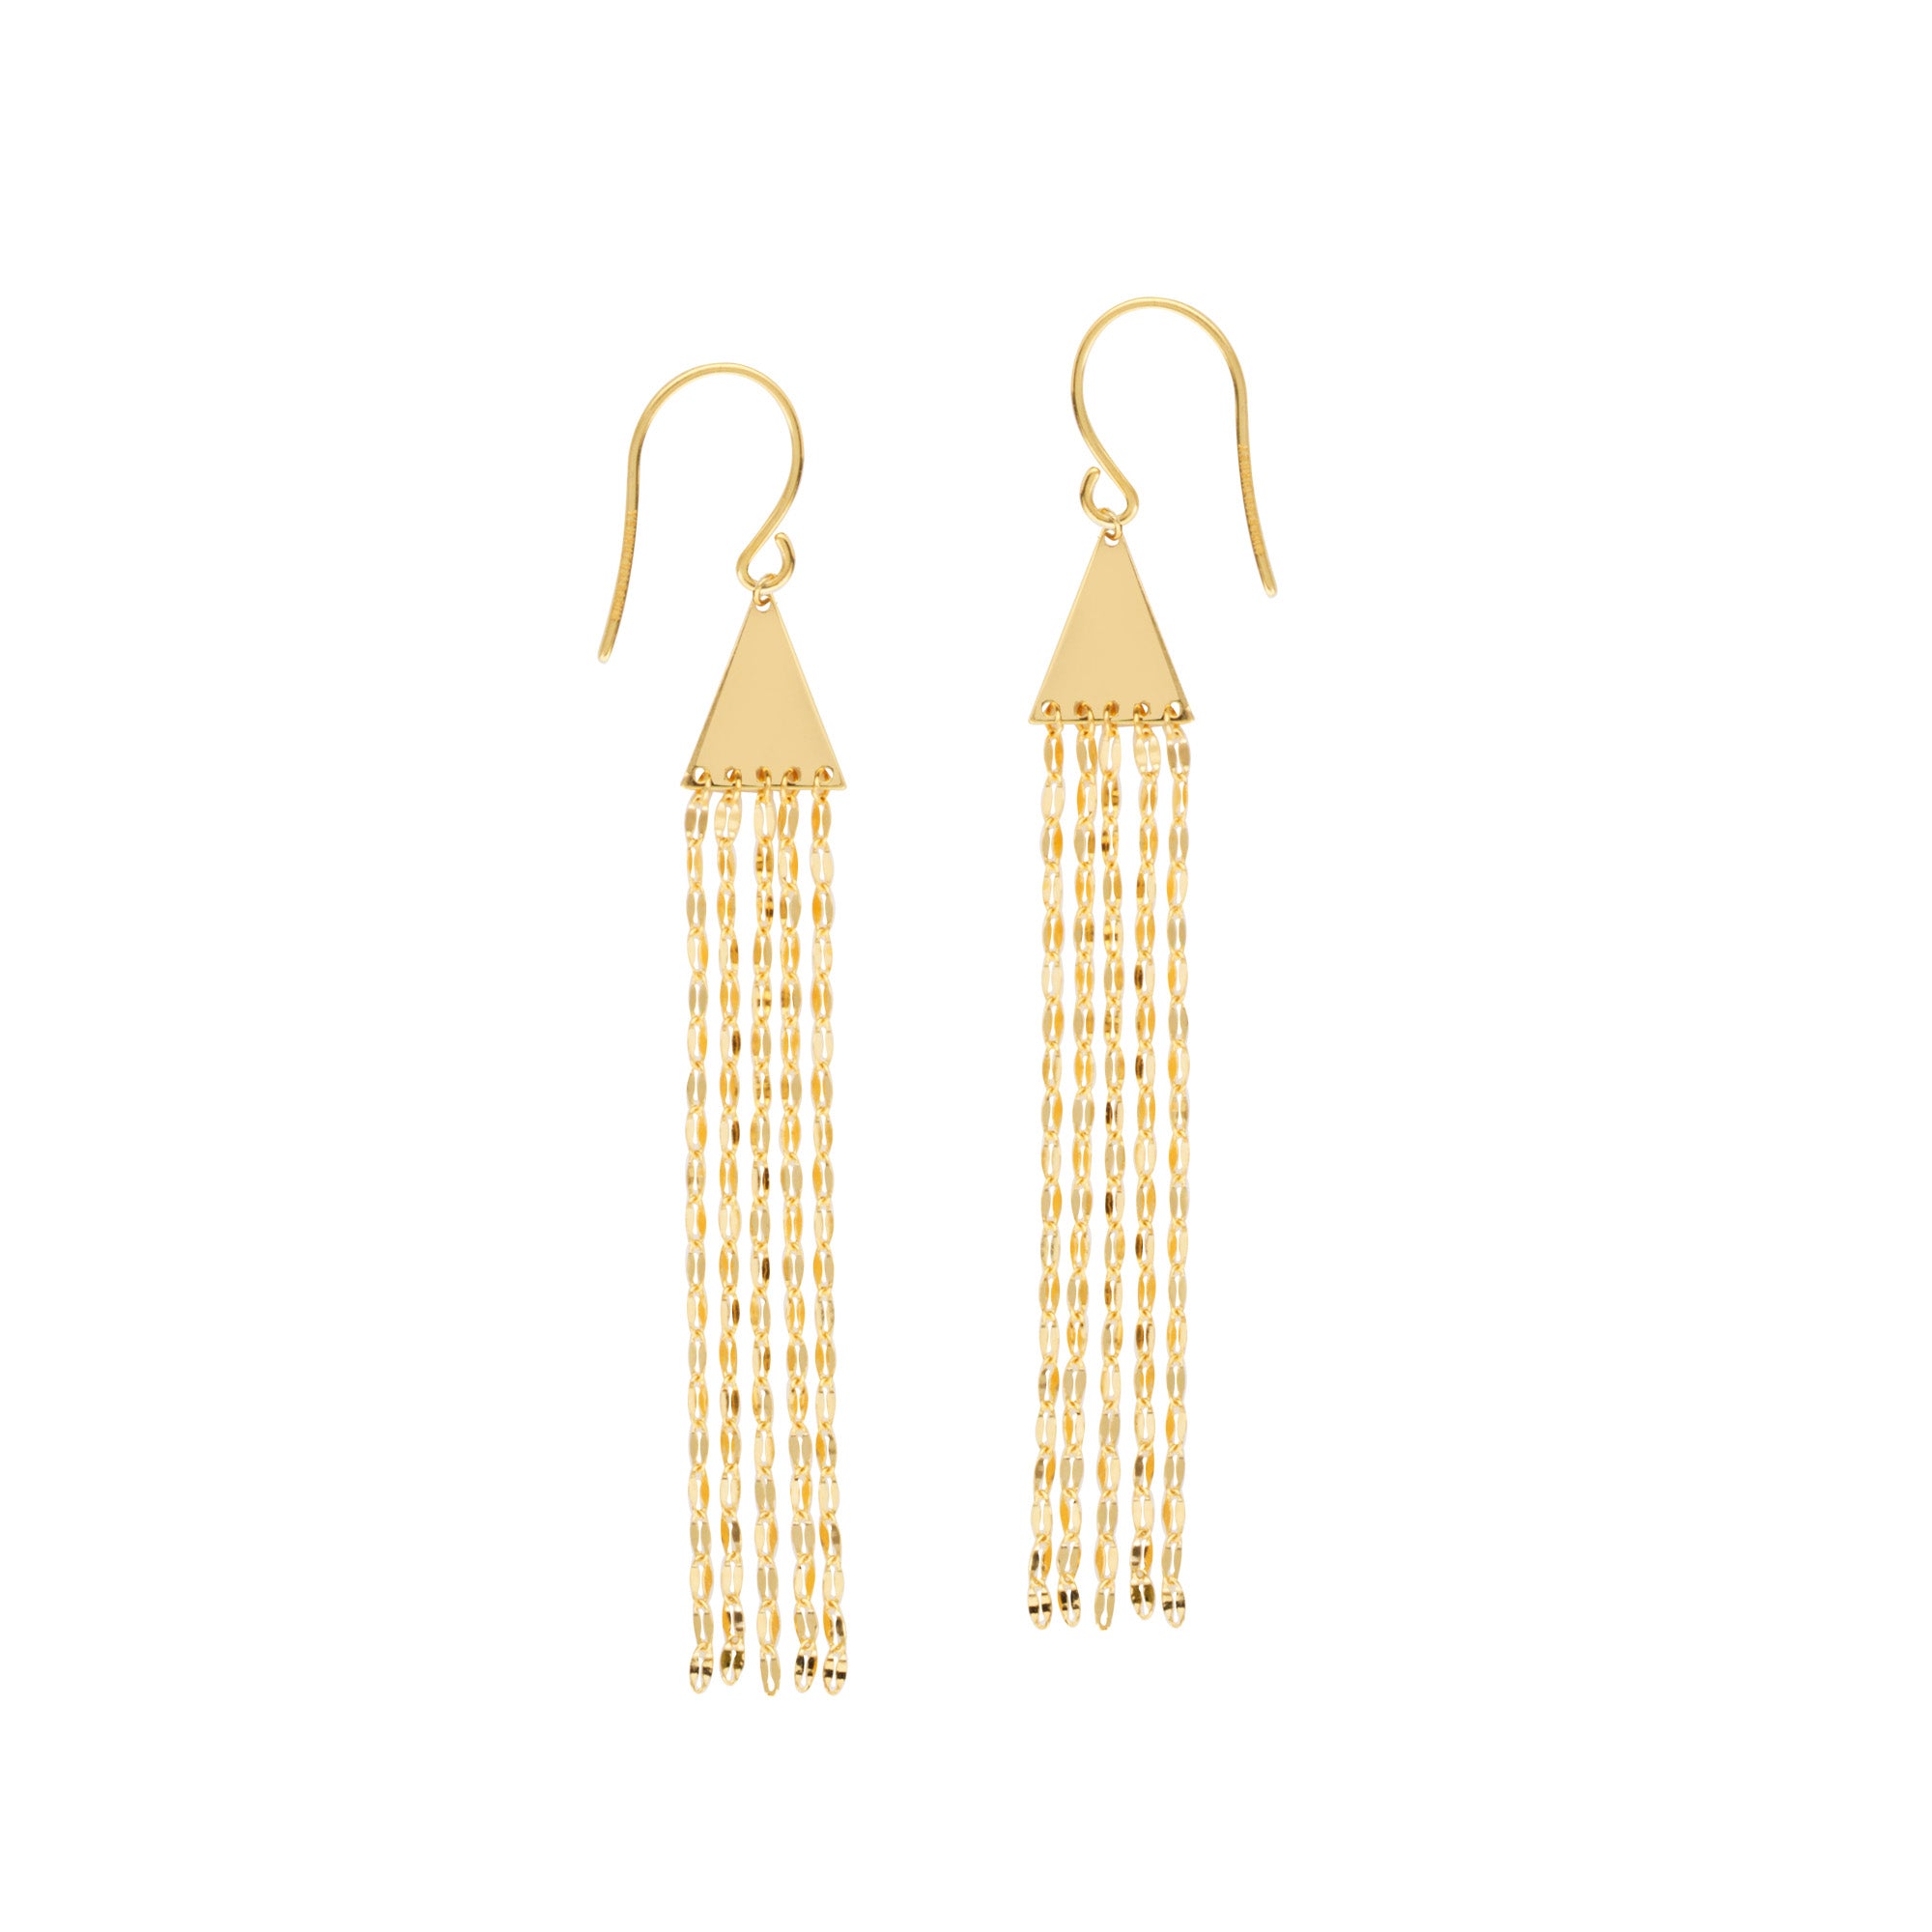 14K gult guld Tofs Drop Earrings fina designersmycken för män och kvinnor